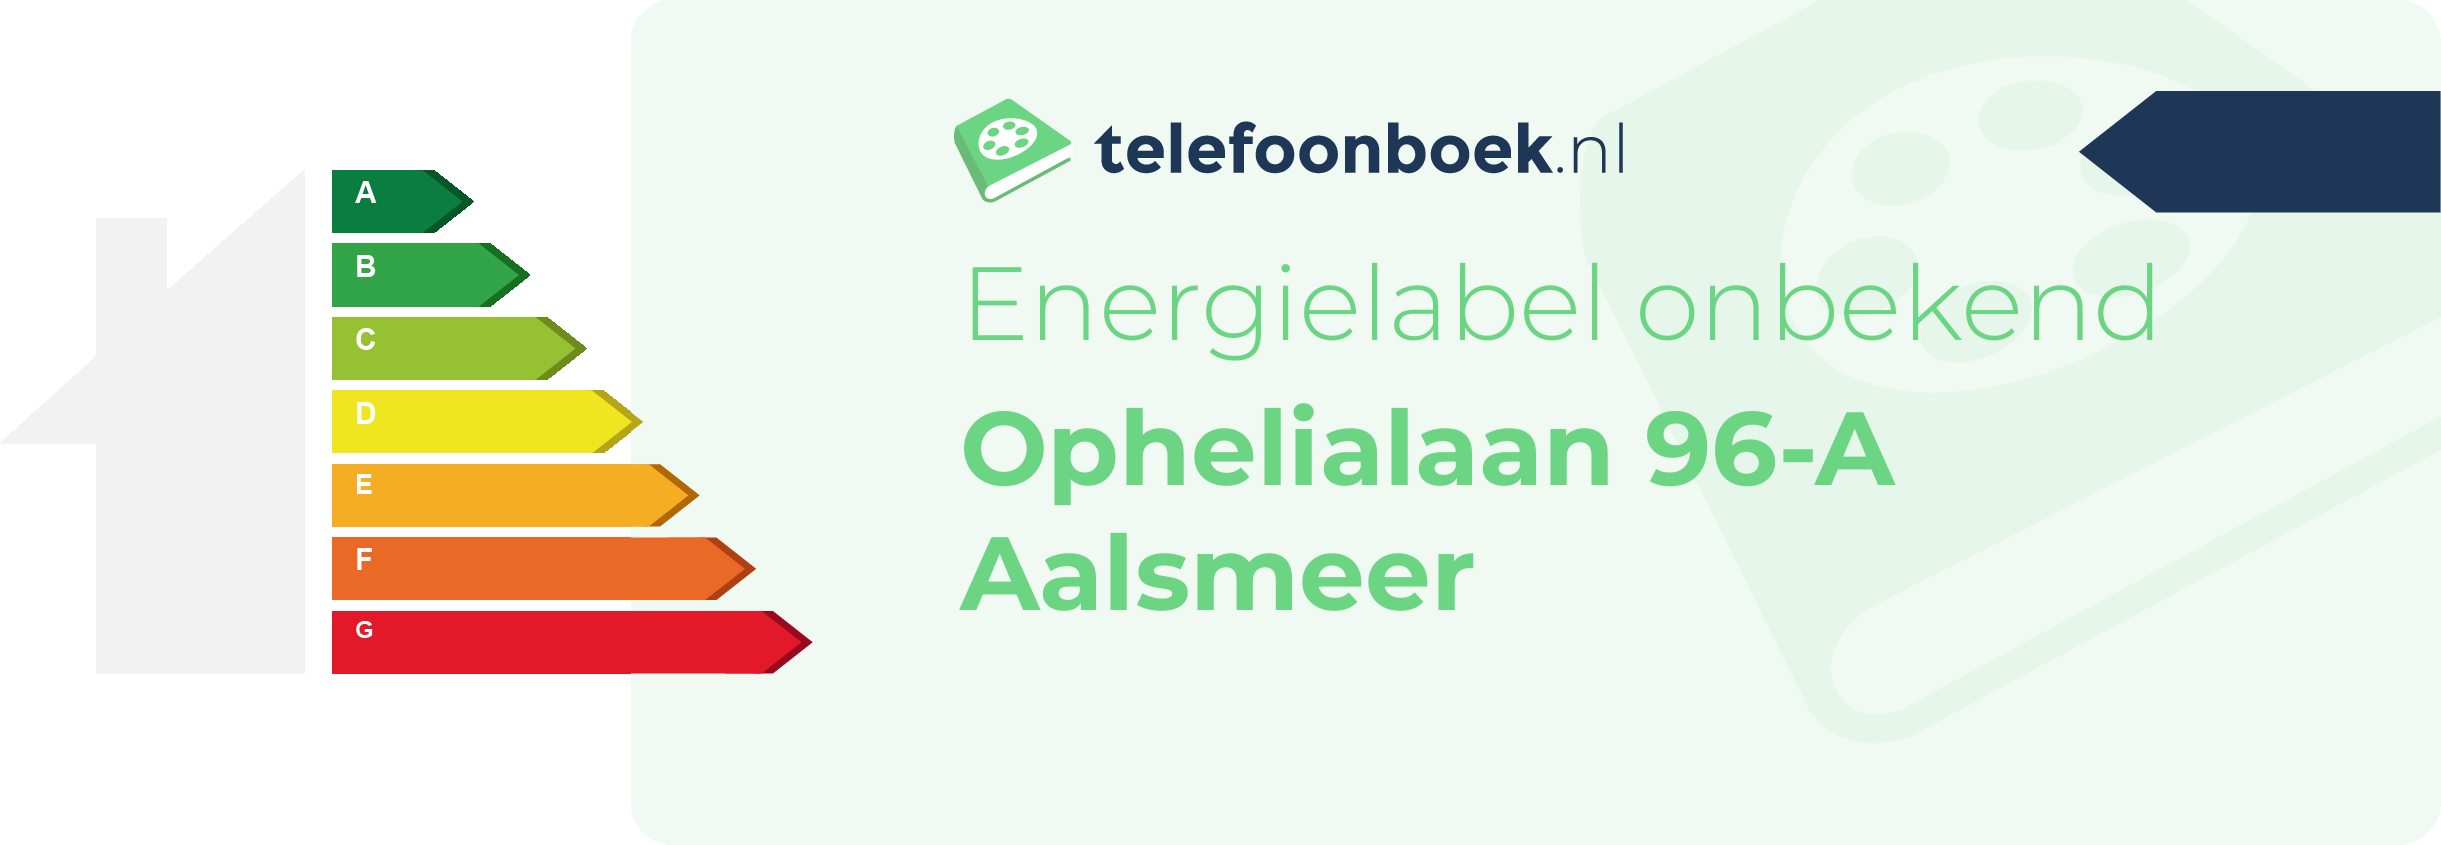 Energielabel Ophelialaan 96-A Aalsmeer